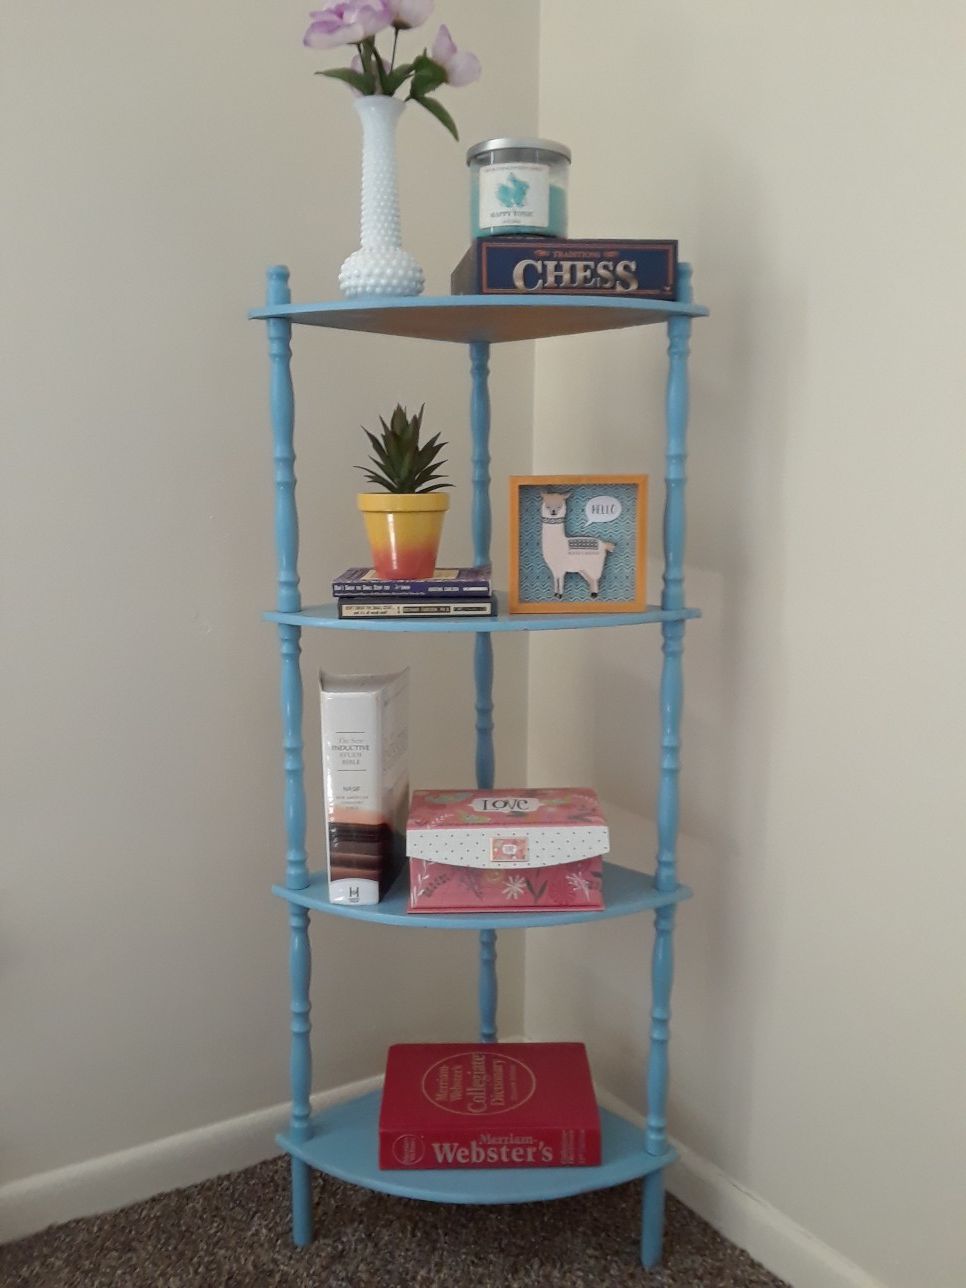 4 tier book shelf